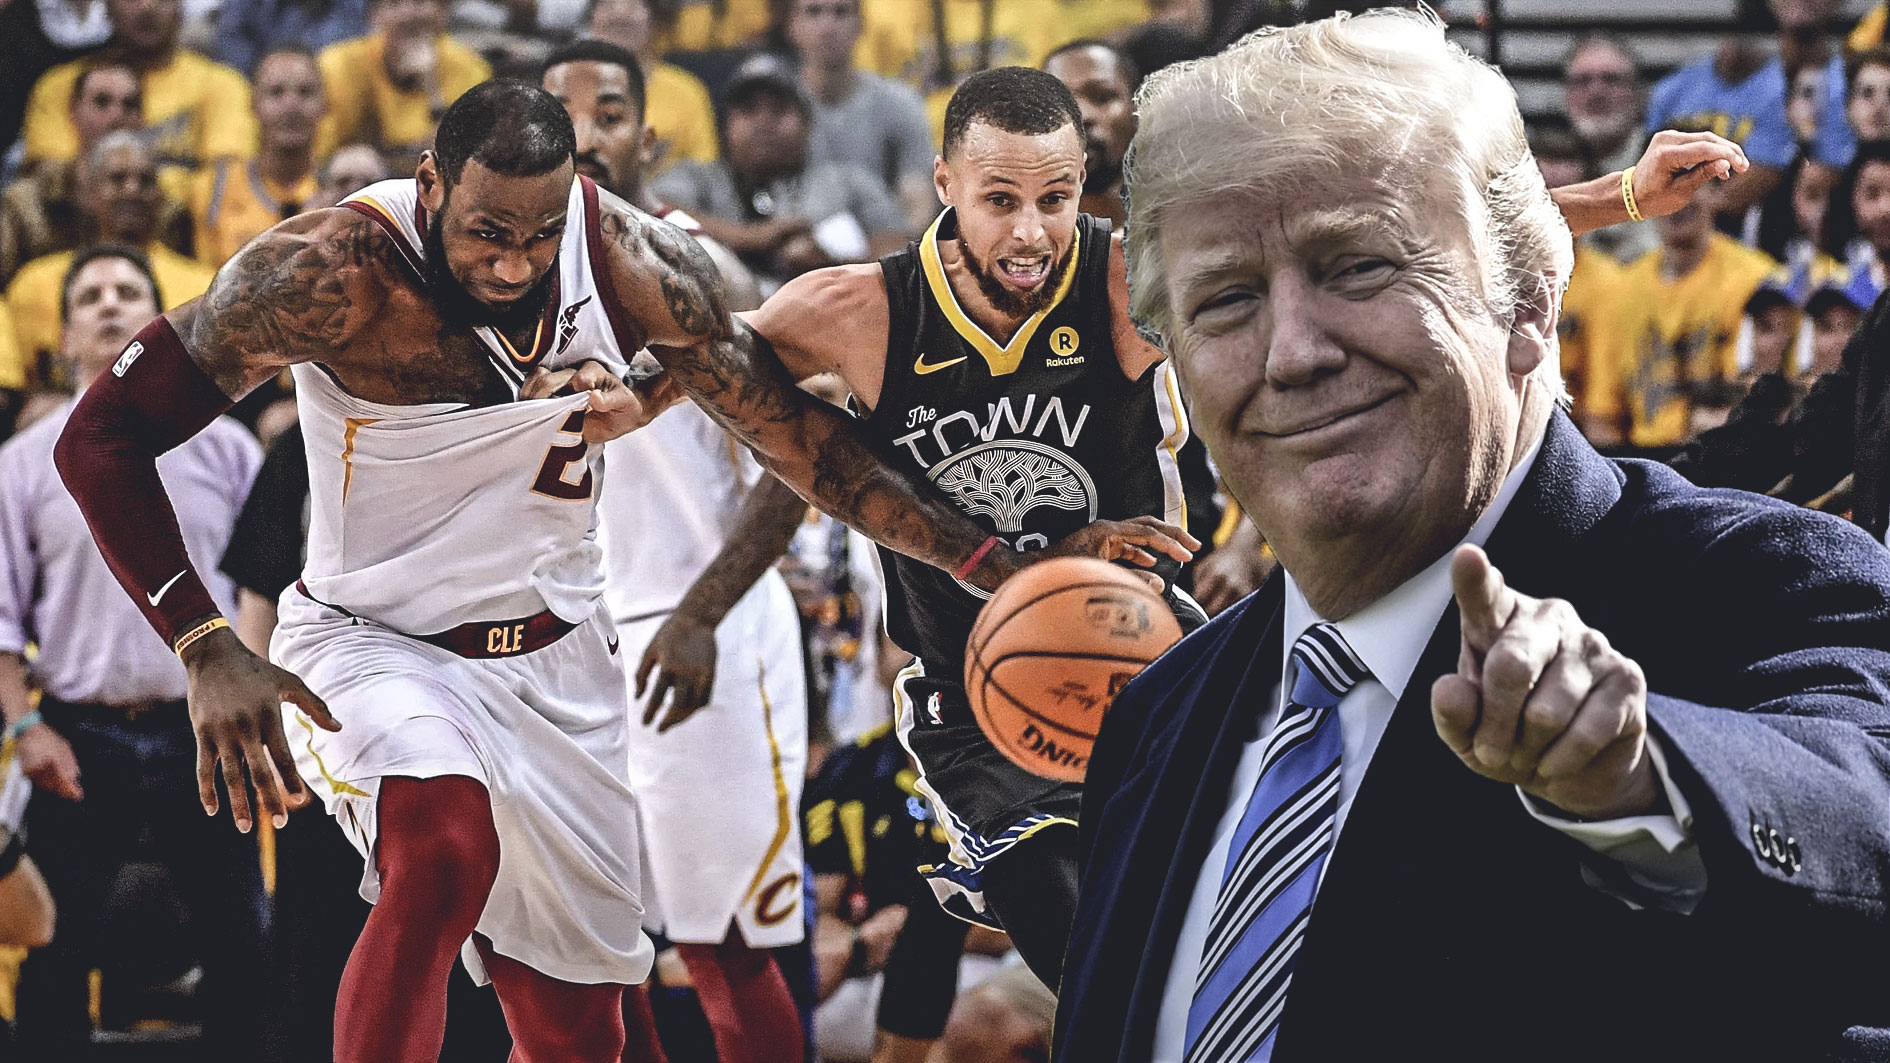 La NBA se convierte en una organización política según el presidente Trump